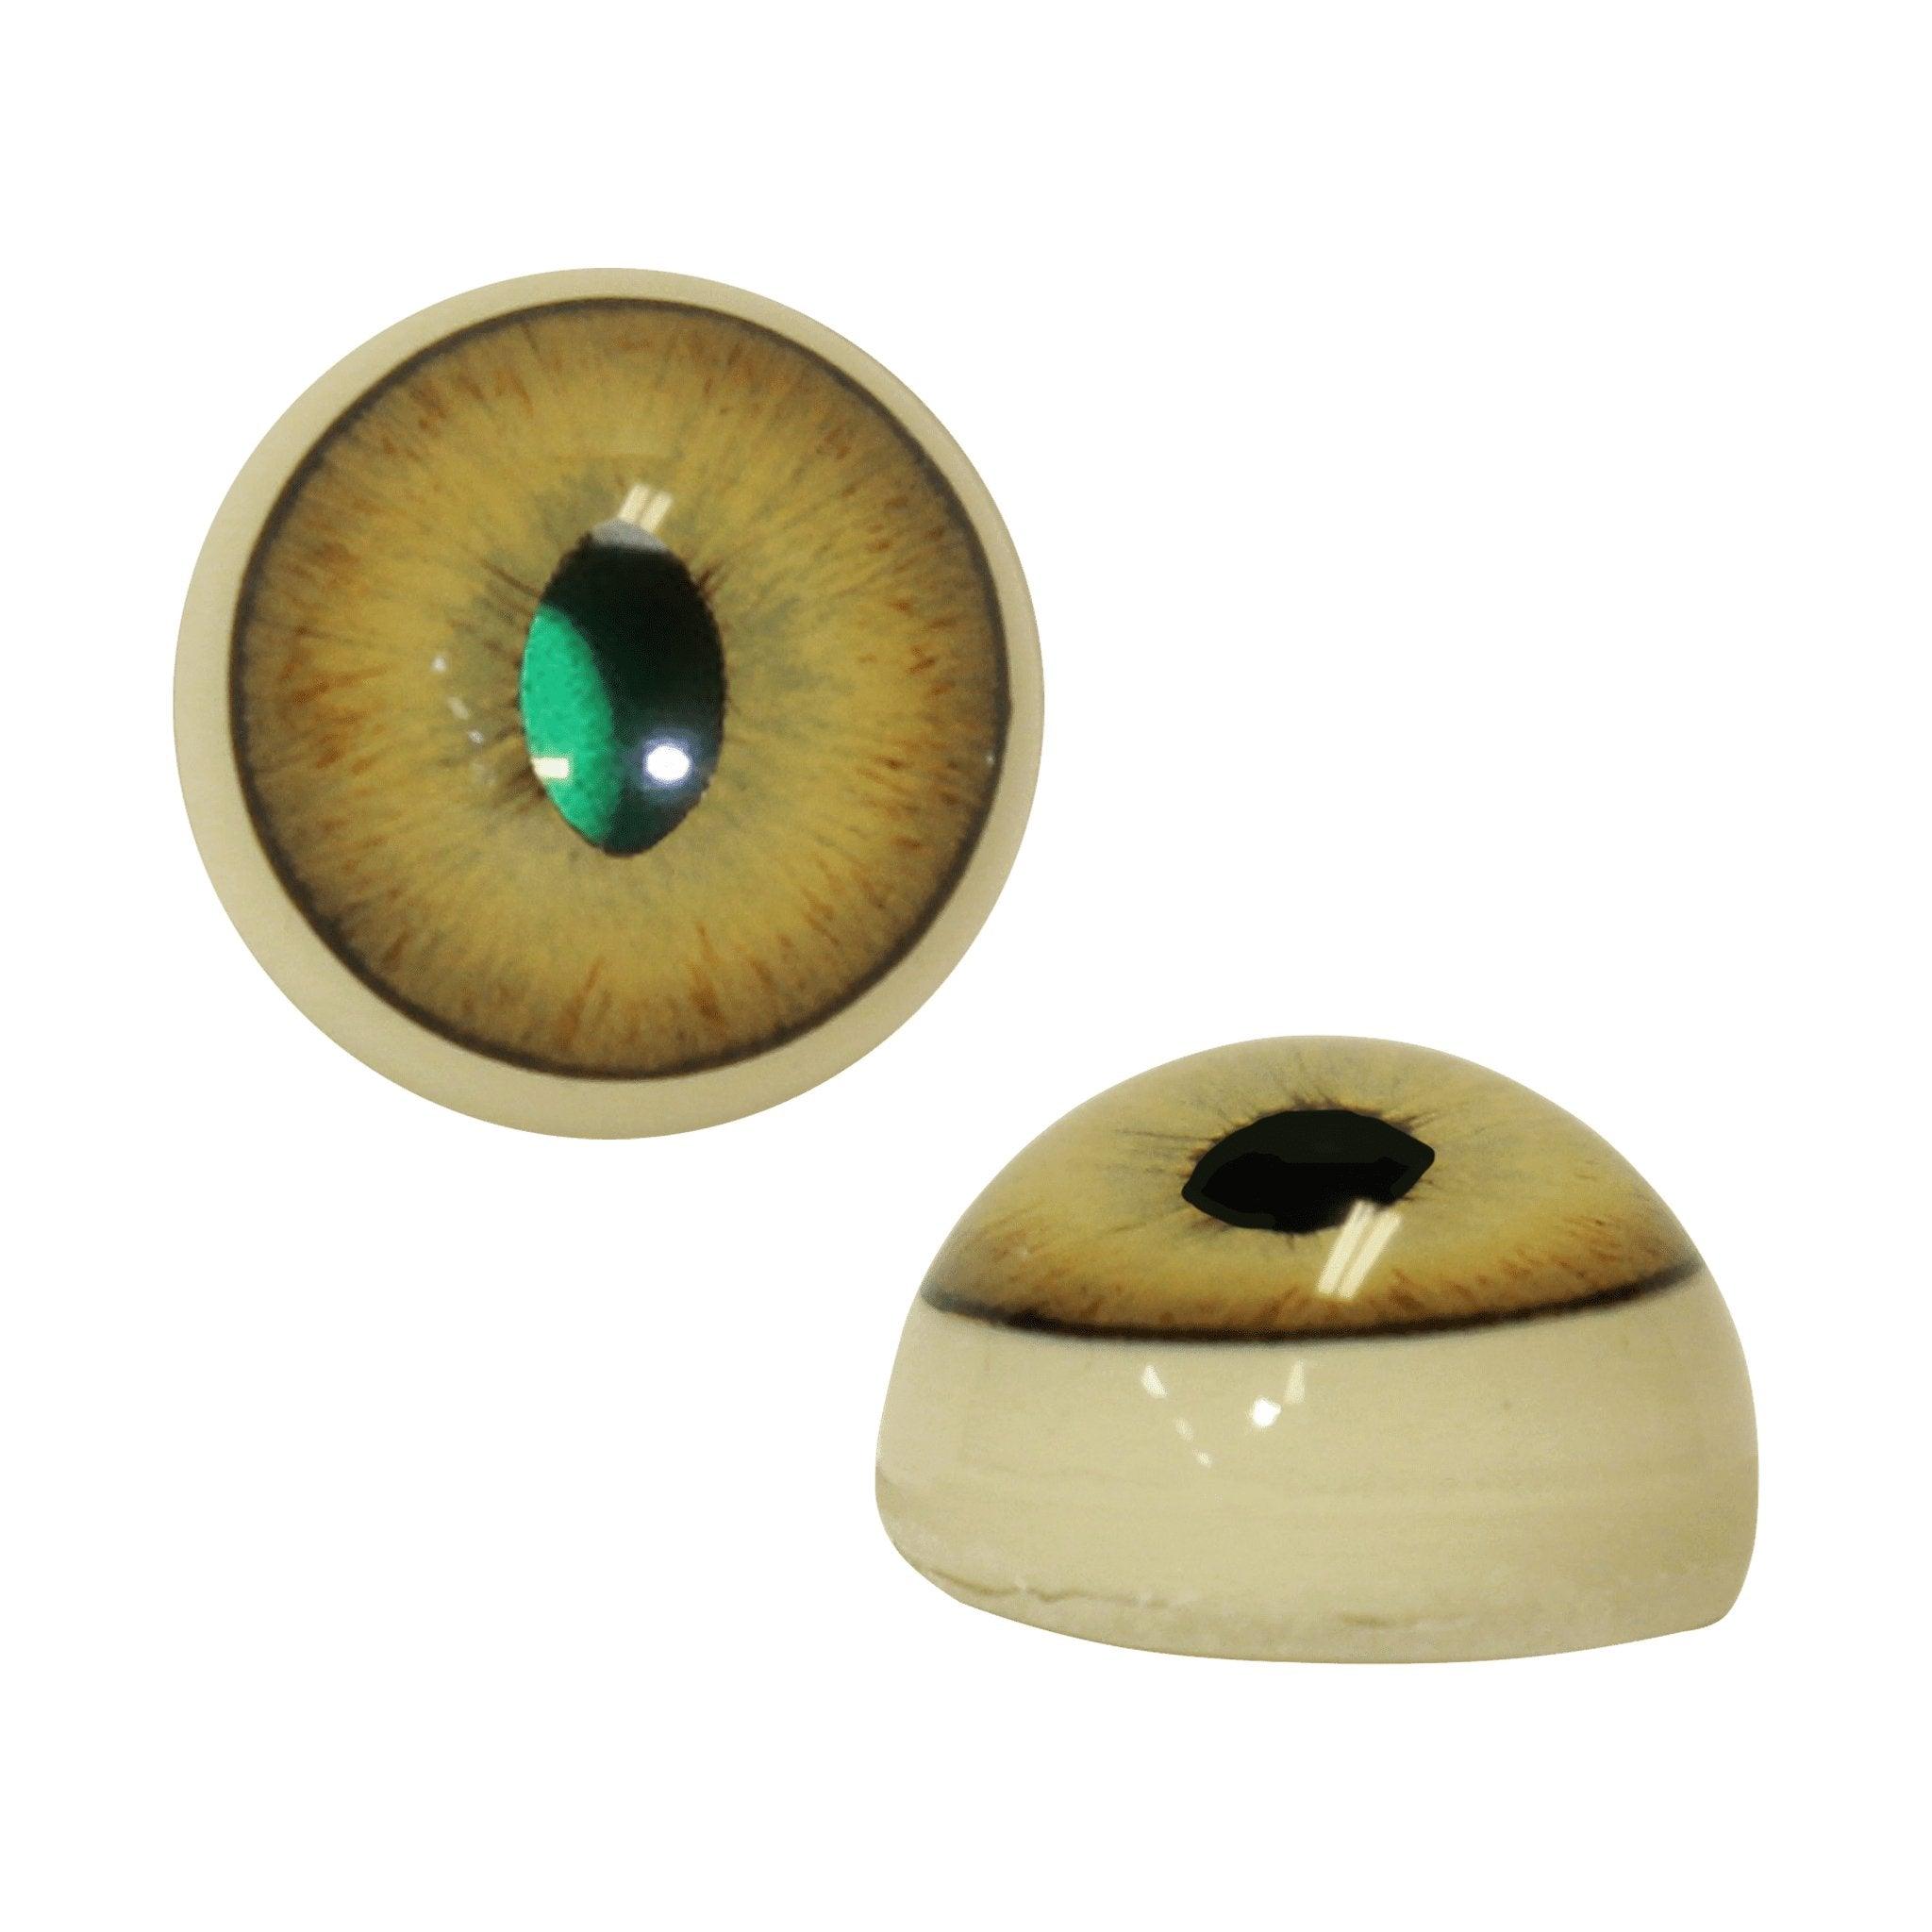 Reflective Eyes (All Species) - Matuska Taxidermy Supply Company